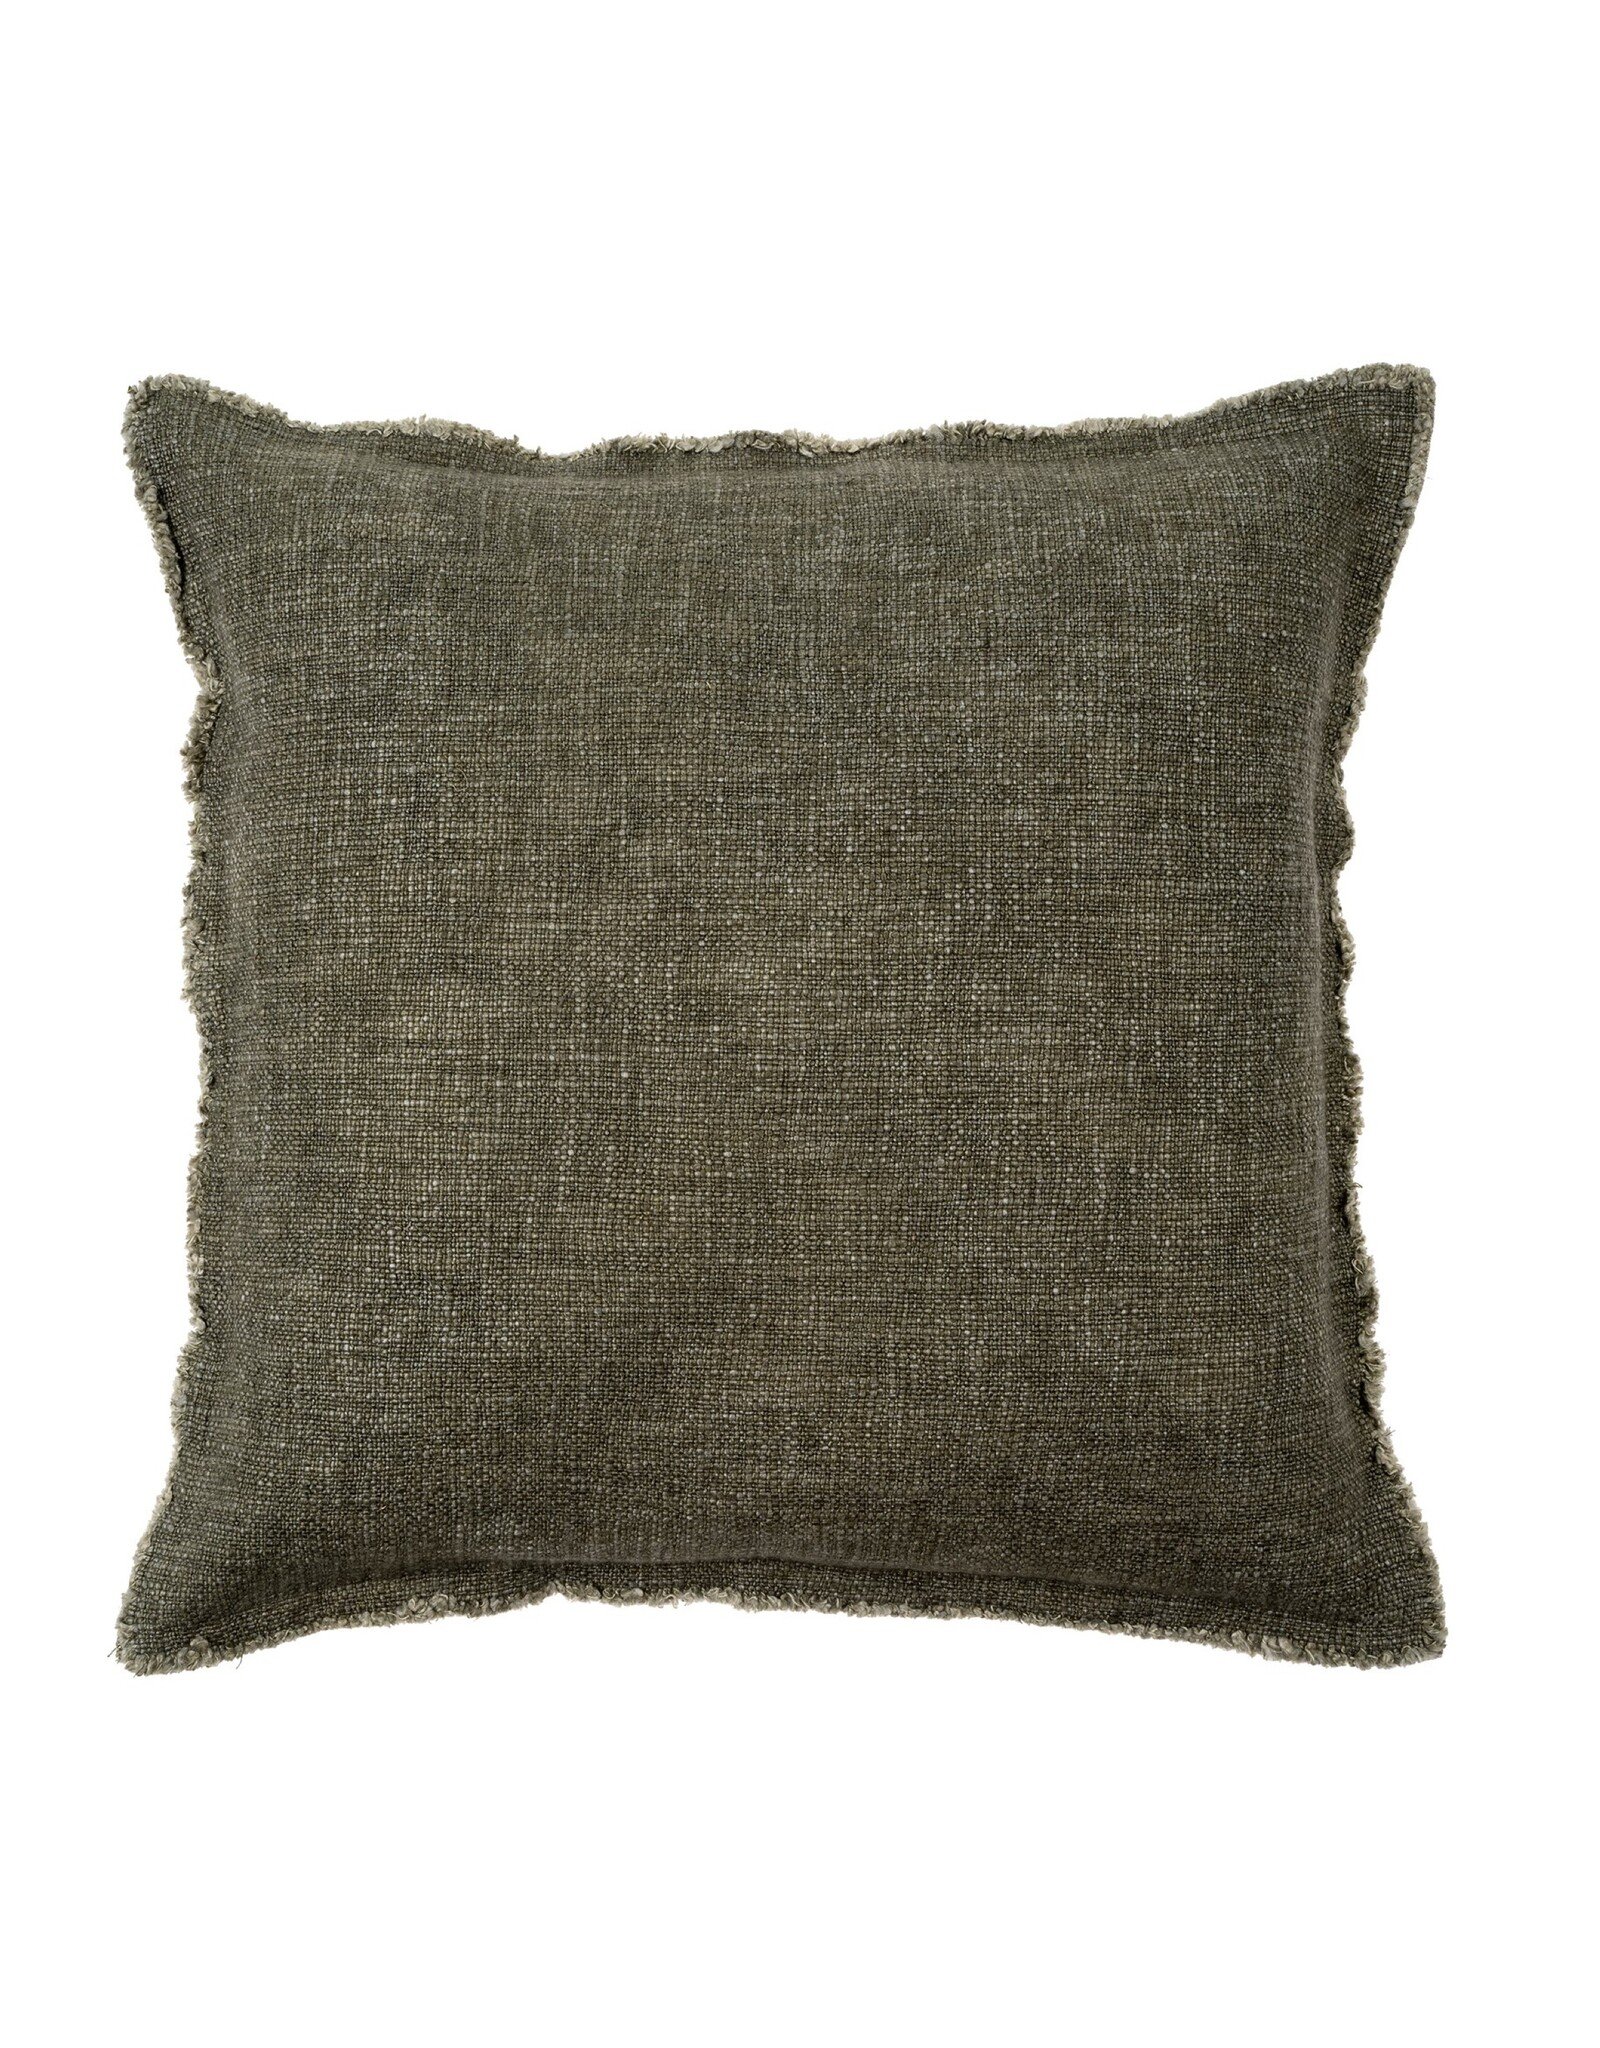 Indaba Cushions Indaba Selena Linen Forest 20 x 20 1-3198-C